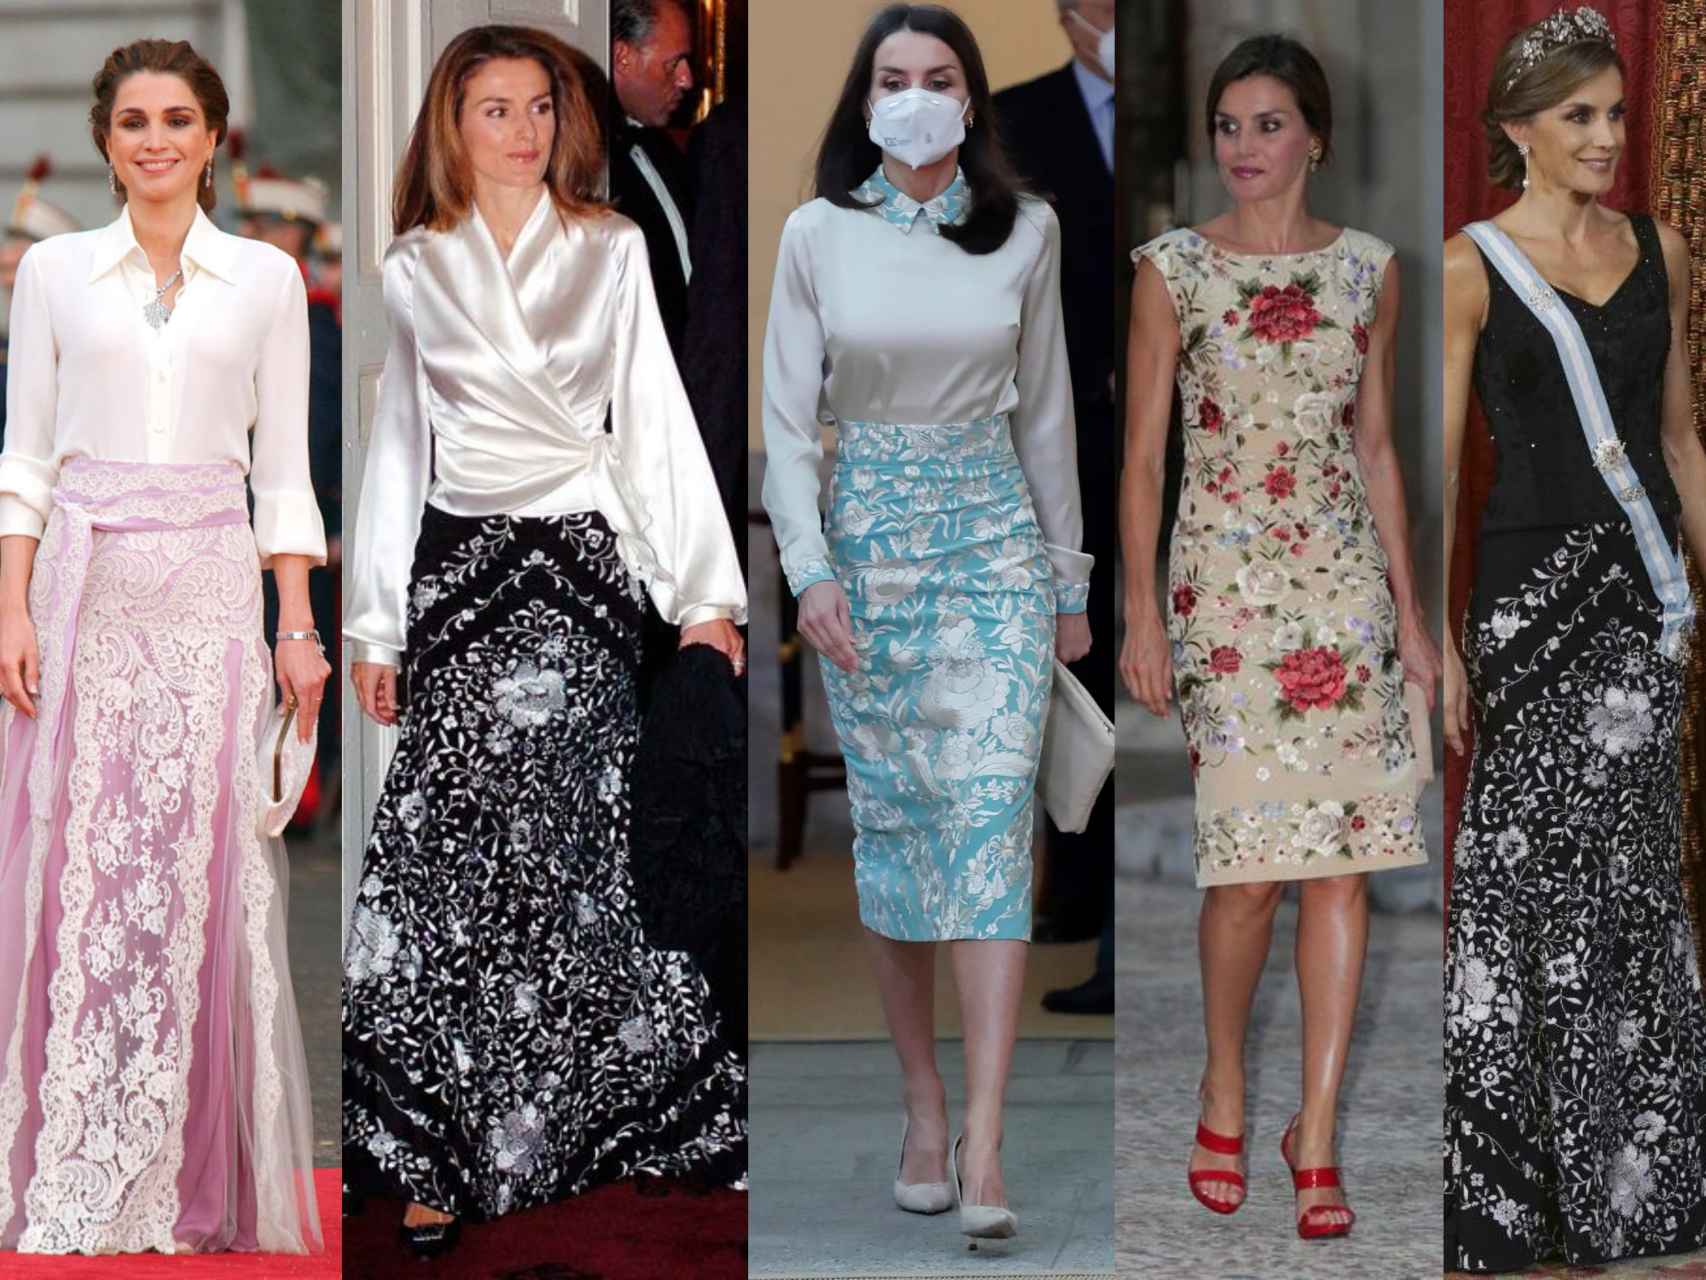 La reina Rania de Jordania, en la boda de los entonces príncipes, y la reina Letizia, en algunas de las numerosas ocasiones en que promociona nuestra cultura a través de la moda.